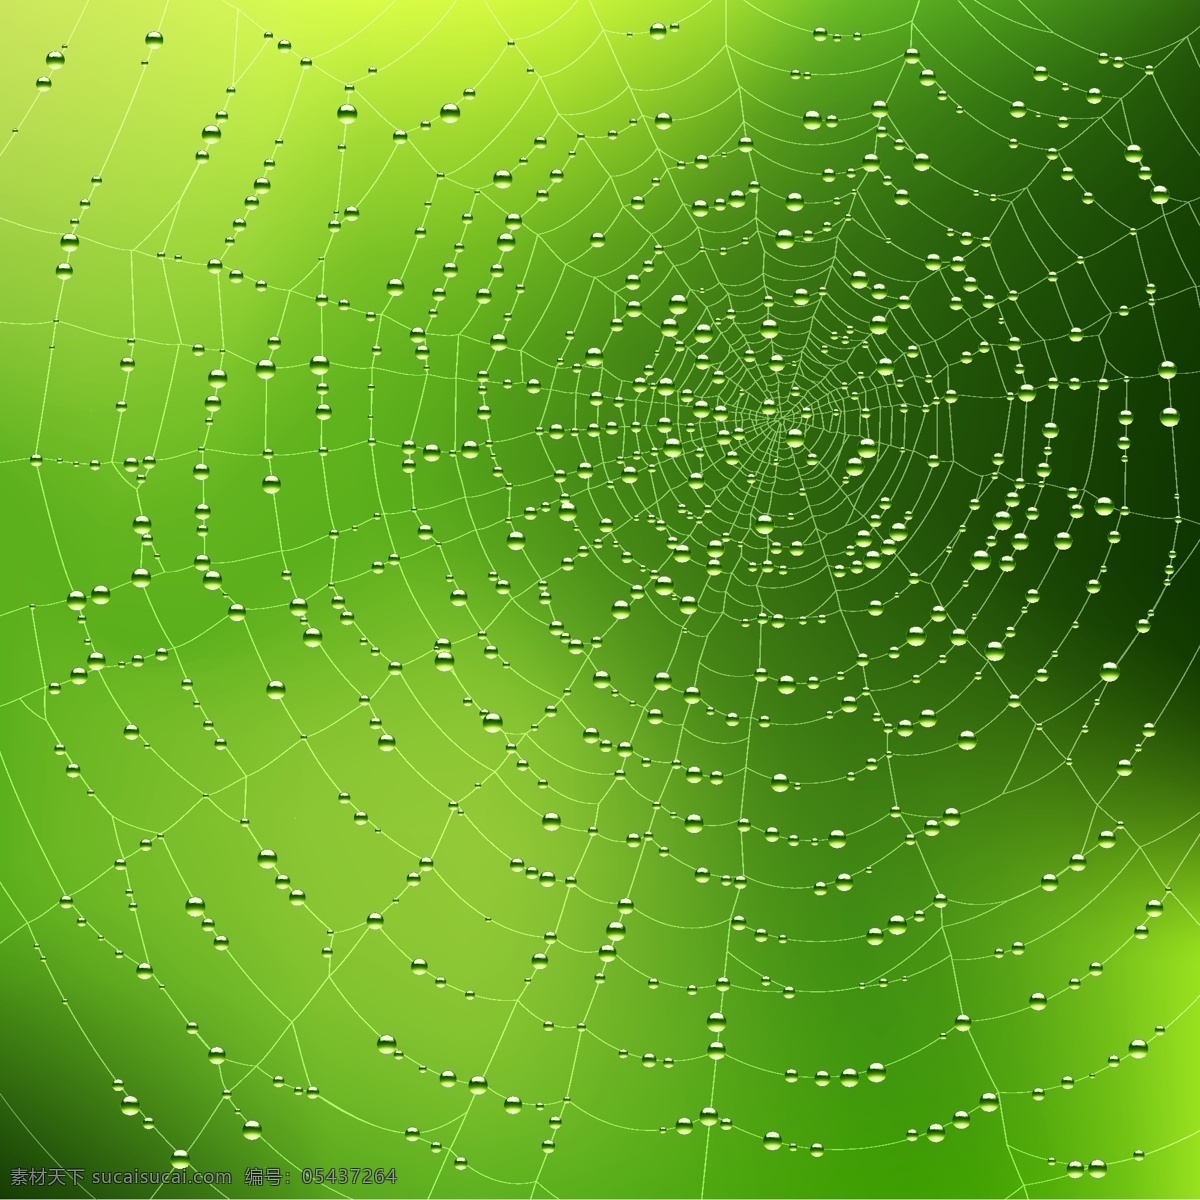 蜘蛛网 背景 矢量 矢量素材 线条 表 矢量图 其他矢量图